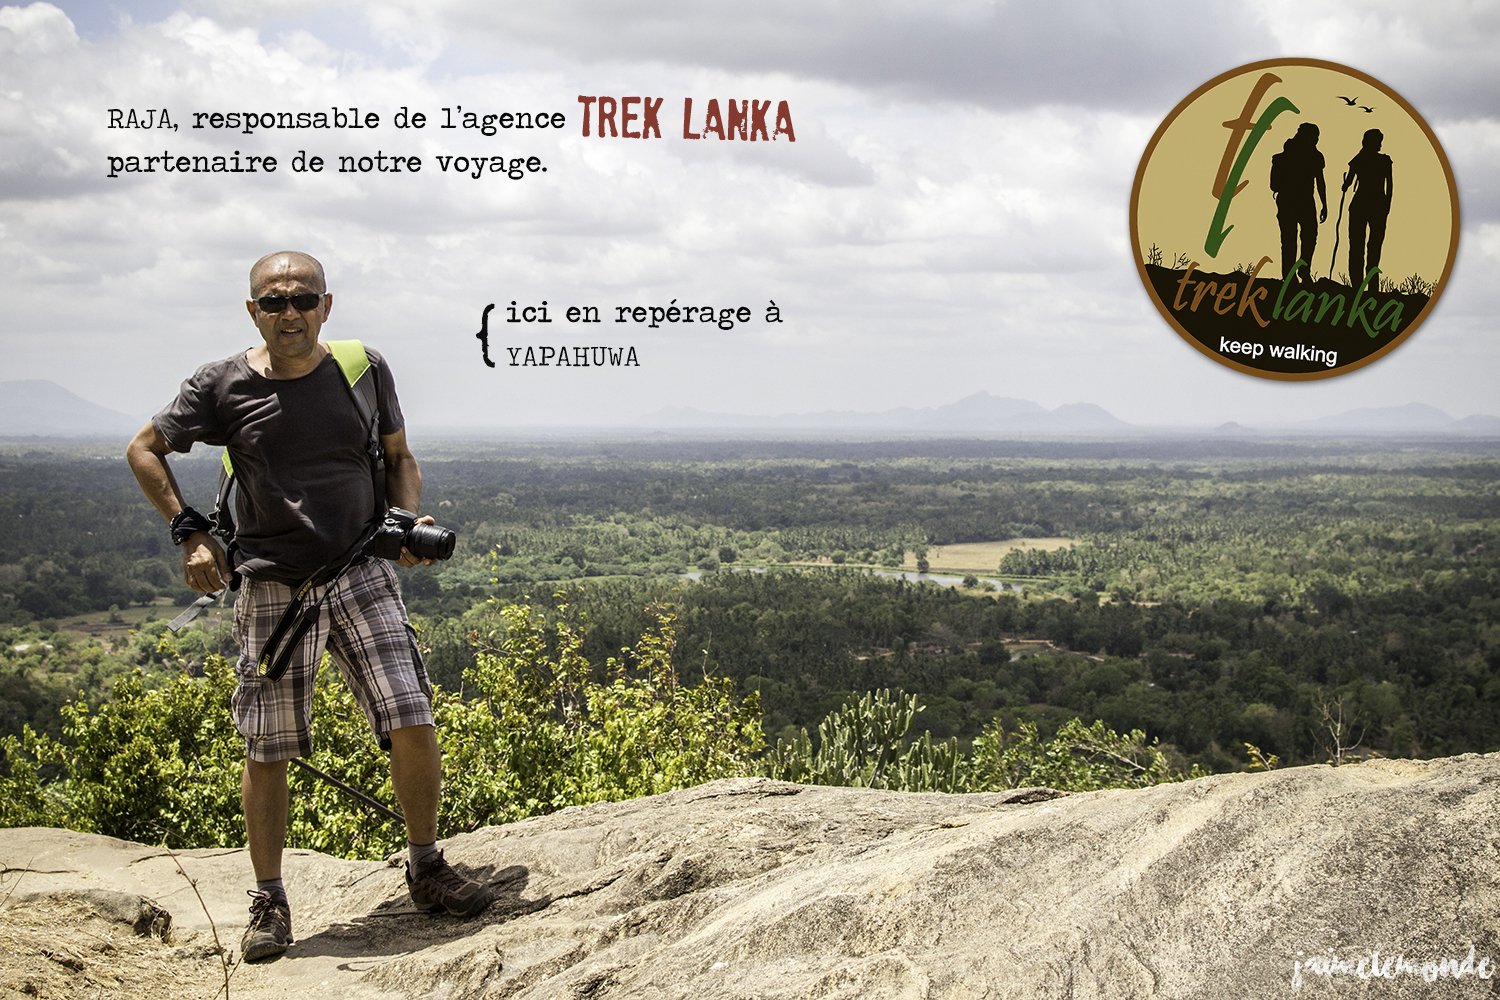 Voyage Sri Lanka - Trek Lanka agence partenaire - ©jaimelemonde